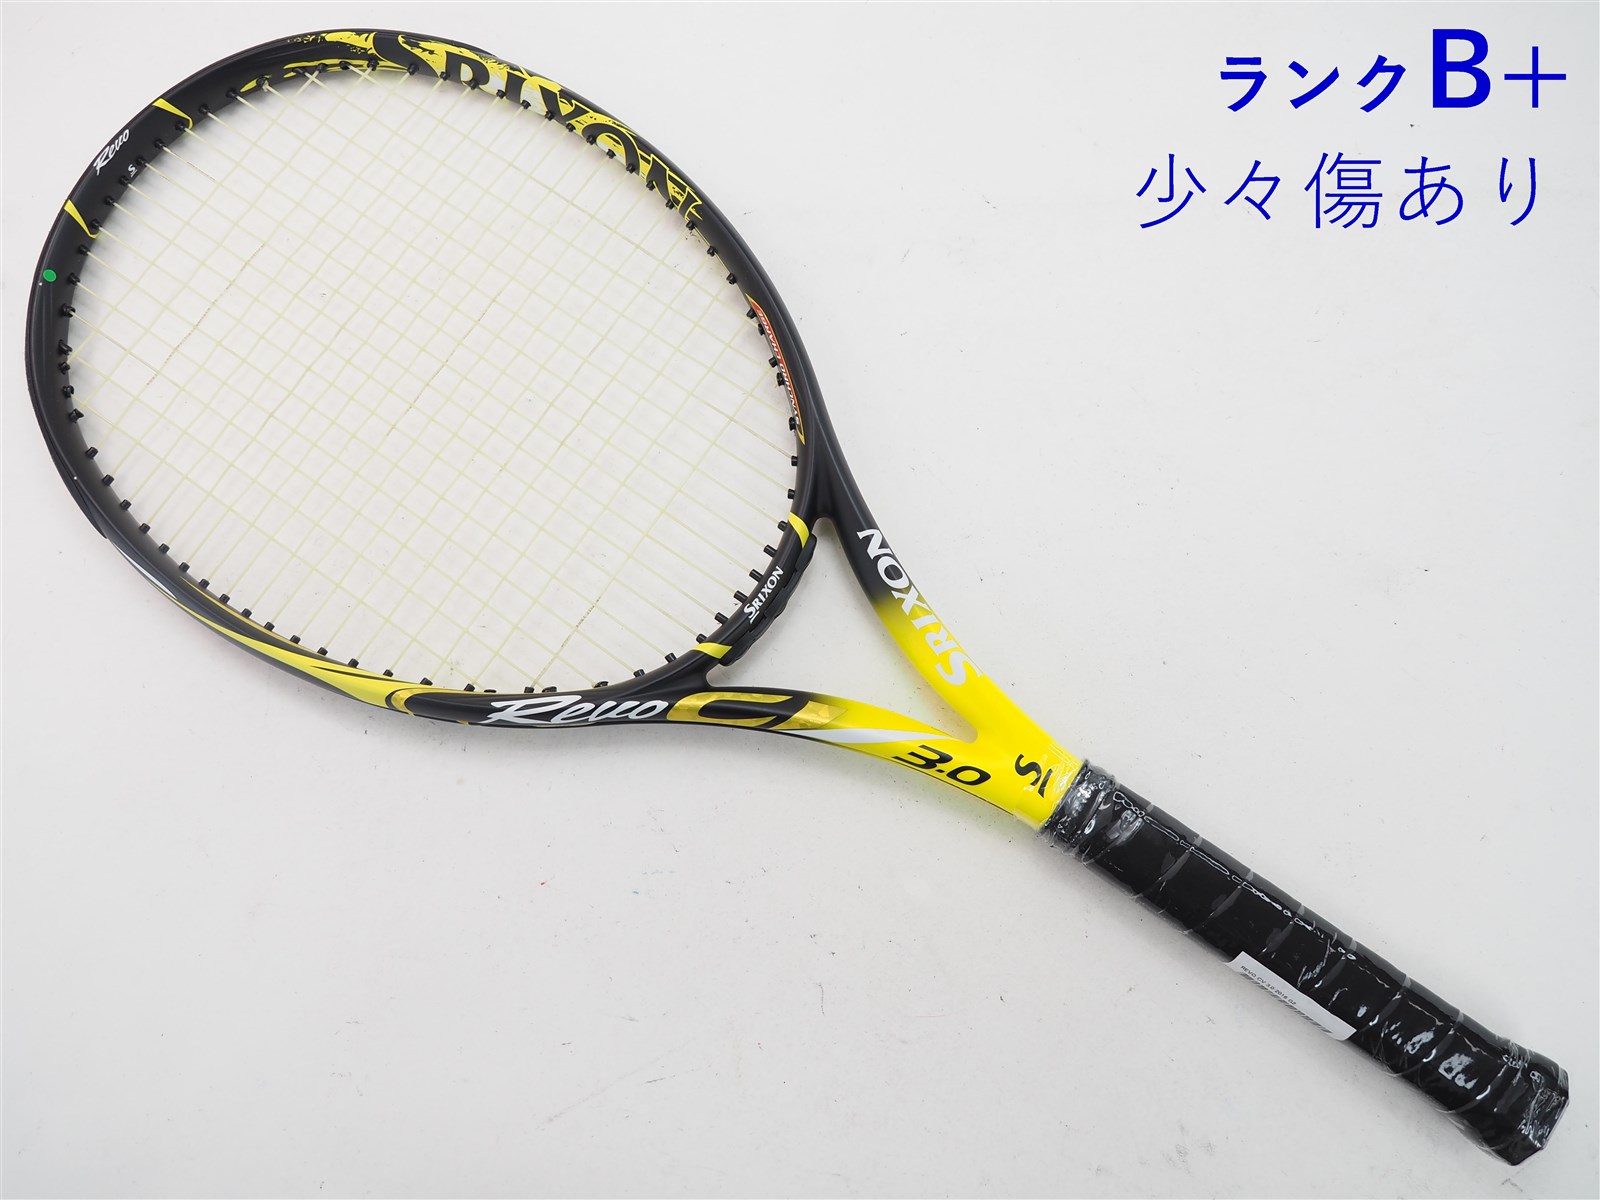 SRIXON スリクソン REVO CV3.0TOUR テニスラケット - ラケット(硬式用)